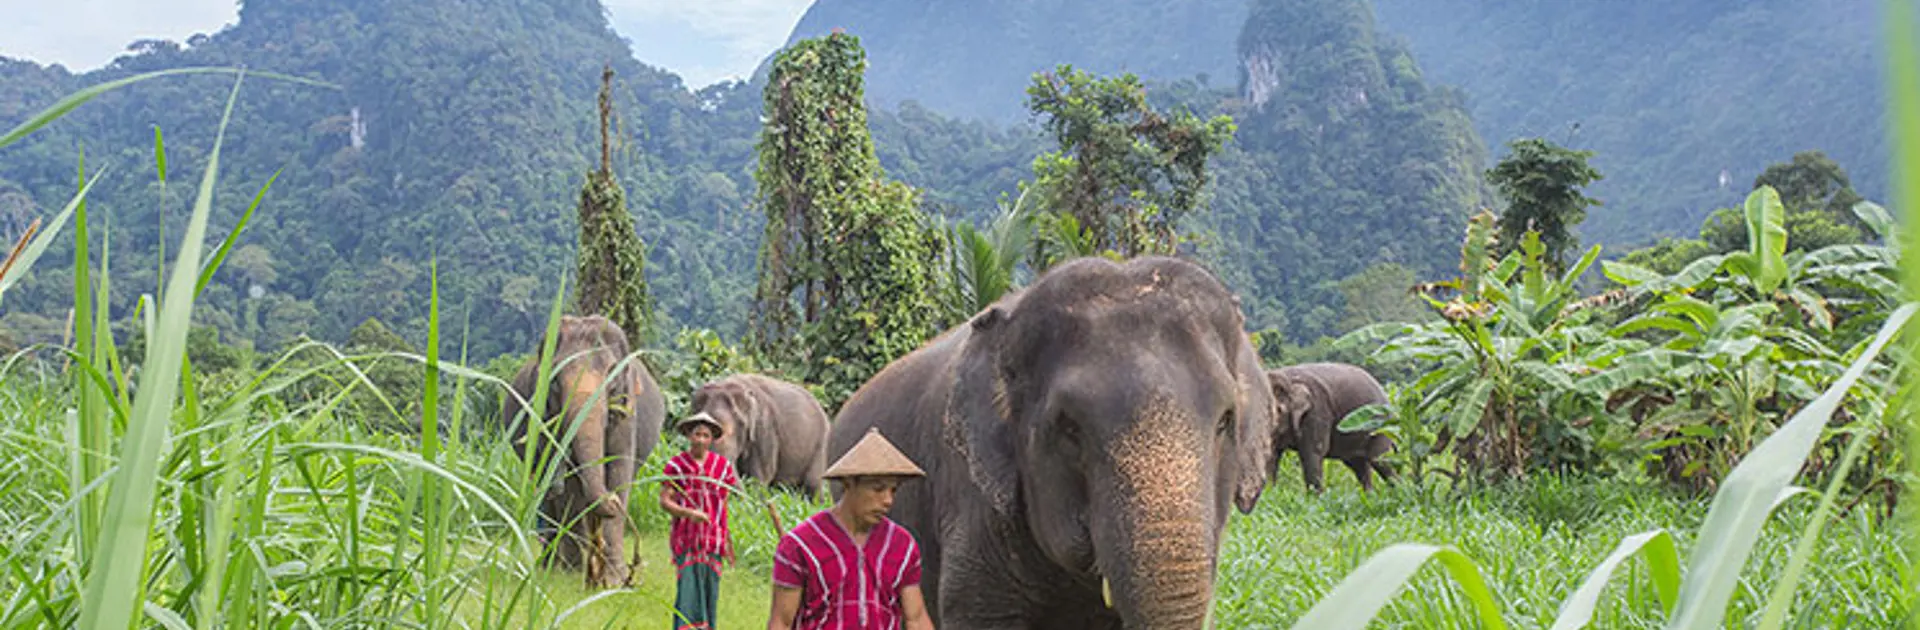 KHAO SOK - elefanterne bruger store dele af dagen sammen med deres personlige assistent, mahoutten, Check Point Travel